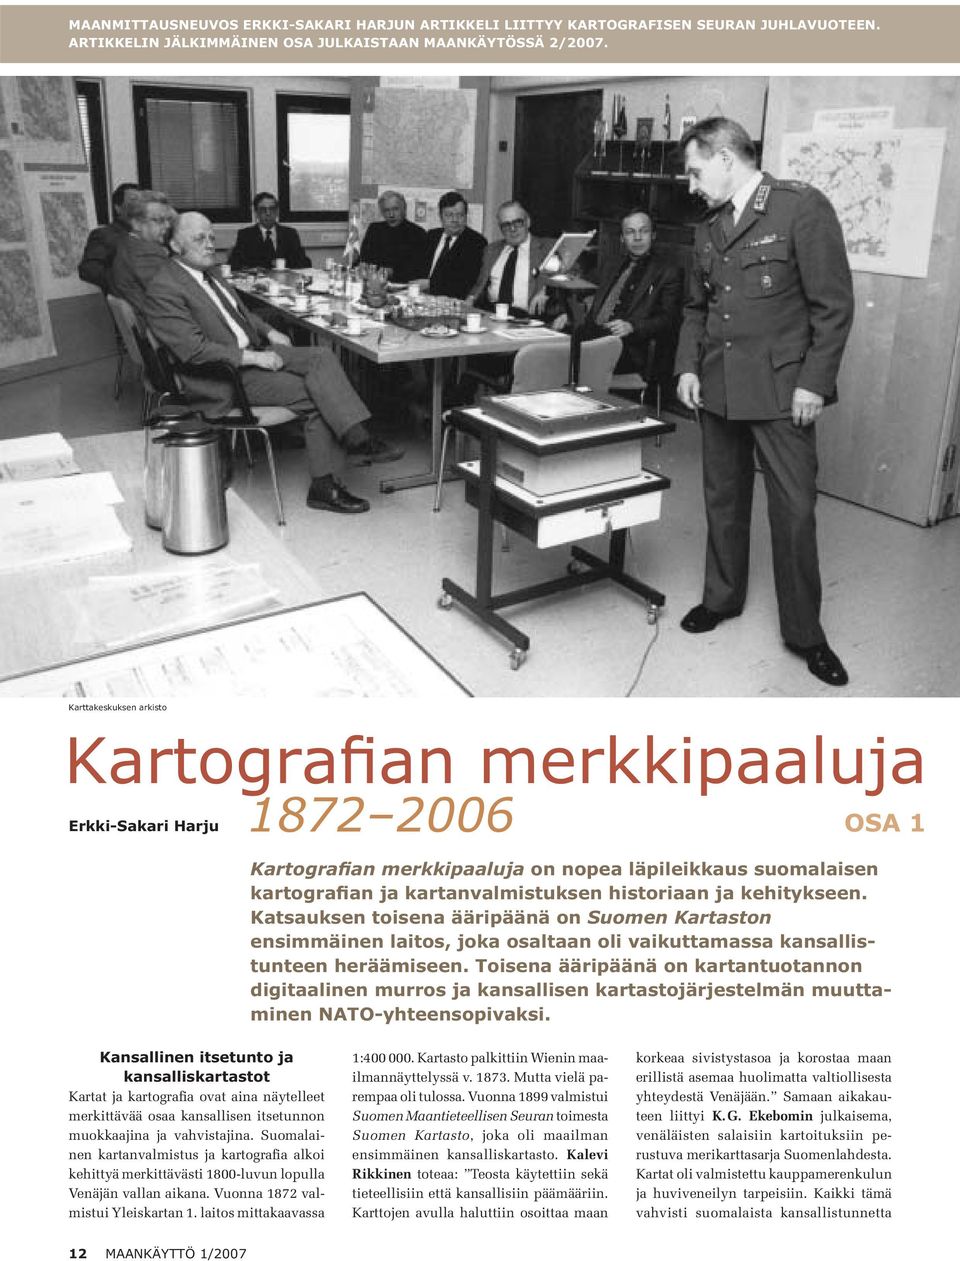 kehitykseen. Katsauksen toisena ääripäänä on Suomen Kartaston ensimmäinen laitos, joka osaltaan oli vaikuttamassa kansallistunteen heräämiseen.